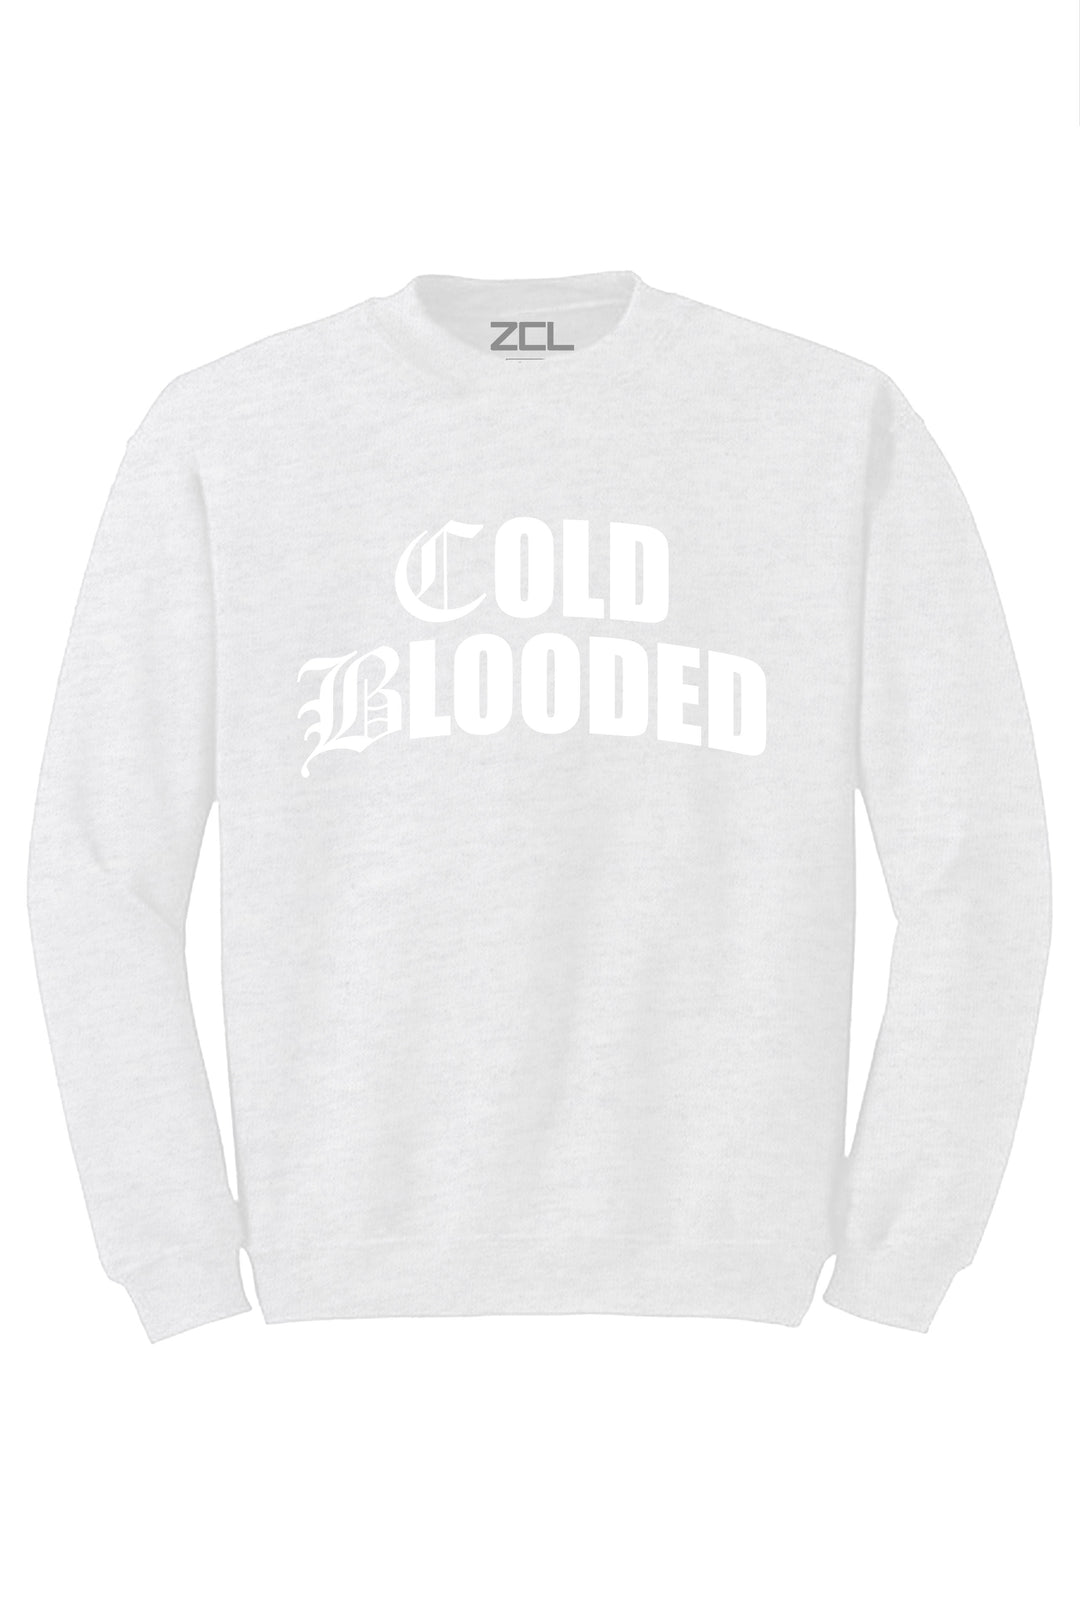 Cold Blooded Crewneck Sweatshirt (White Logo) - Zamage